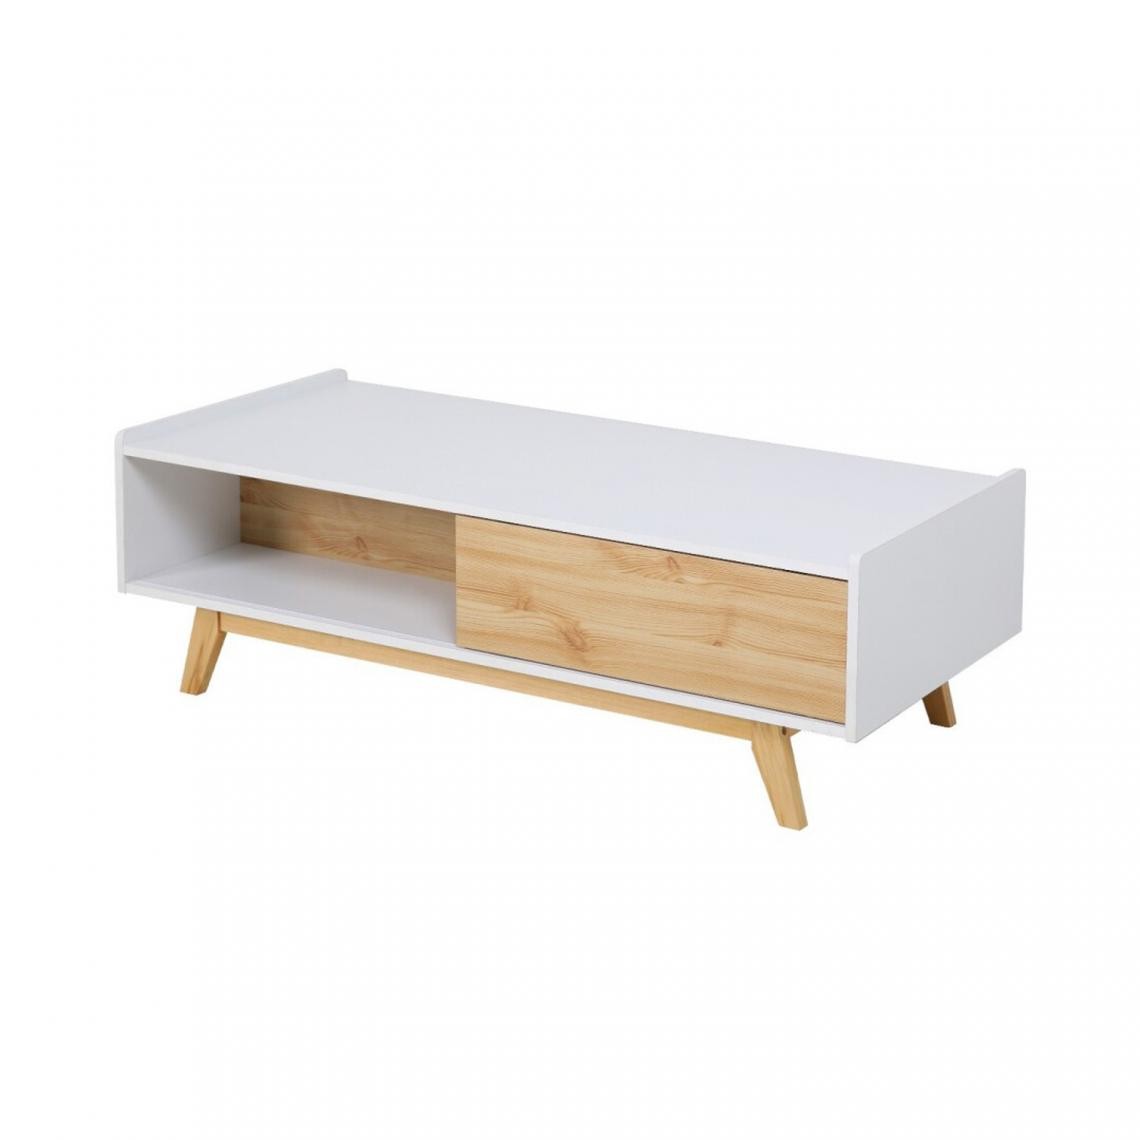 Pegane - Table basse coloris Blanc / naturel - Profondeur 60 x Longueur 120 x Hauteur 40 cm - Tables basses